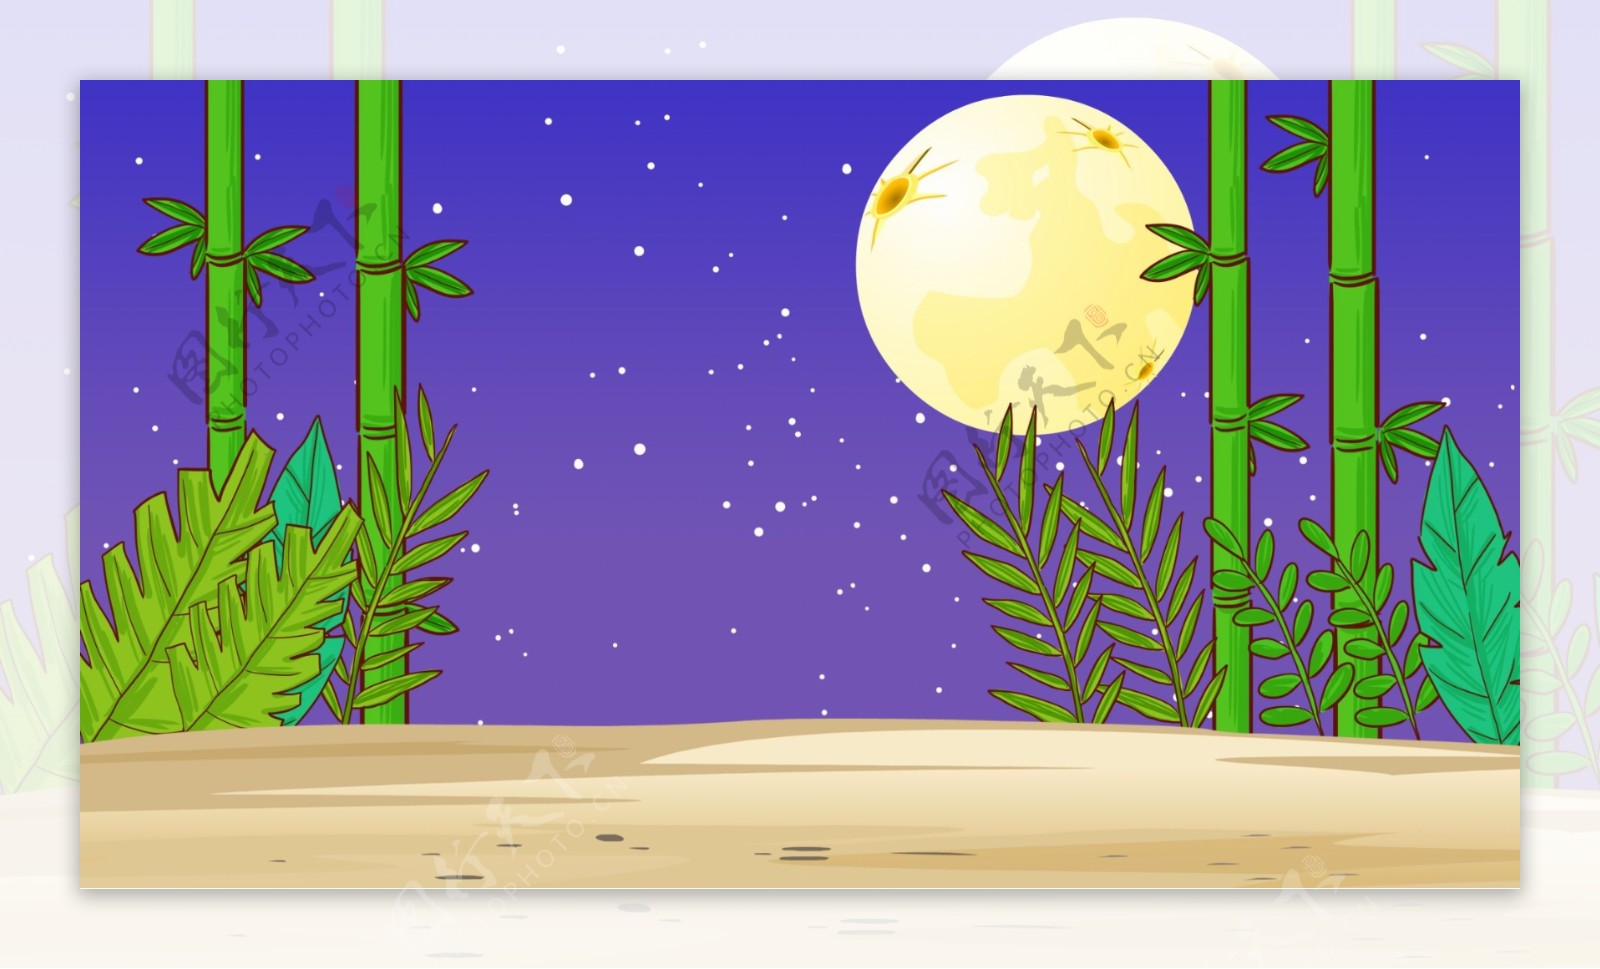 紫色圆月星空竹林背景素材